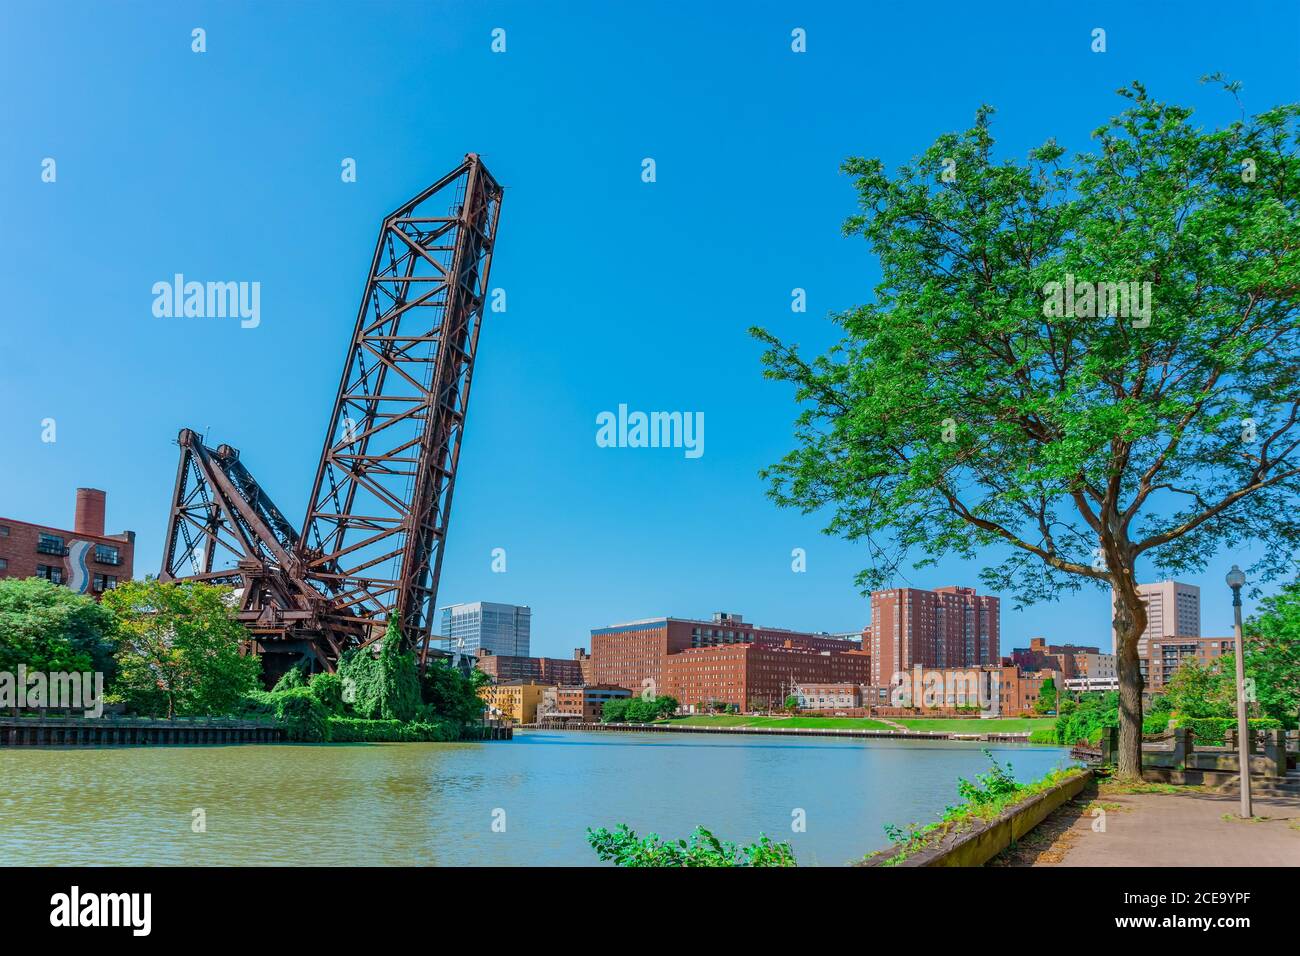 El río Cuyahoga corre por un puente elevado y atraviesa la ciudad de Cleveland, Ohio. Parques y edificios de ladrillo bordean ambos lados del agua. Foto de stock